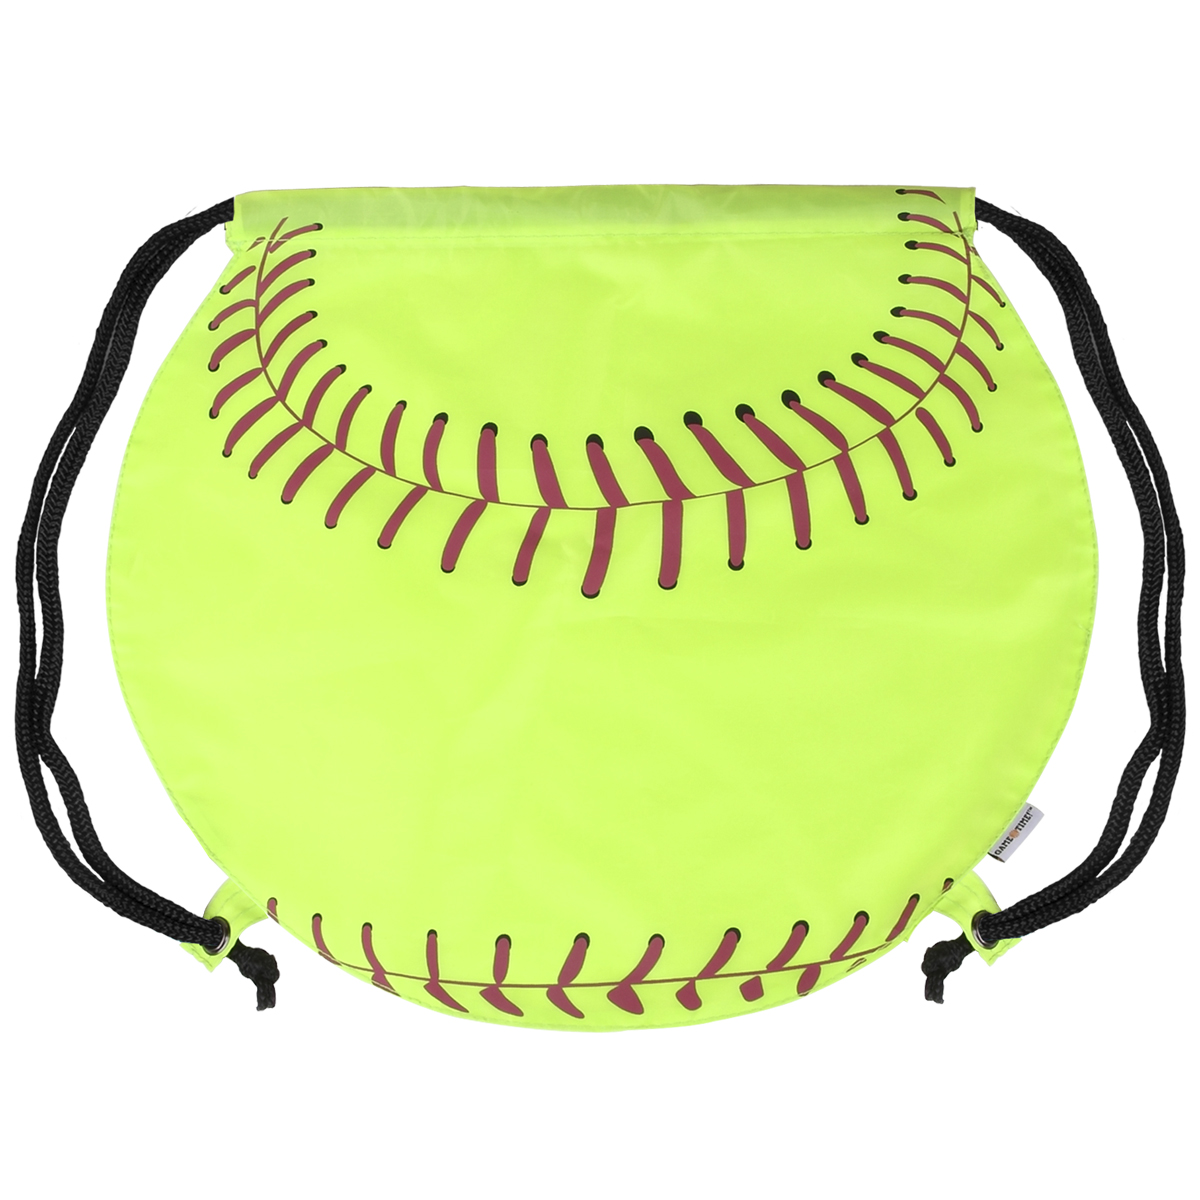 GameTime! ® Softball Drawstring Backpack